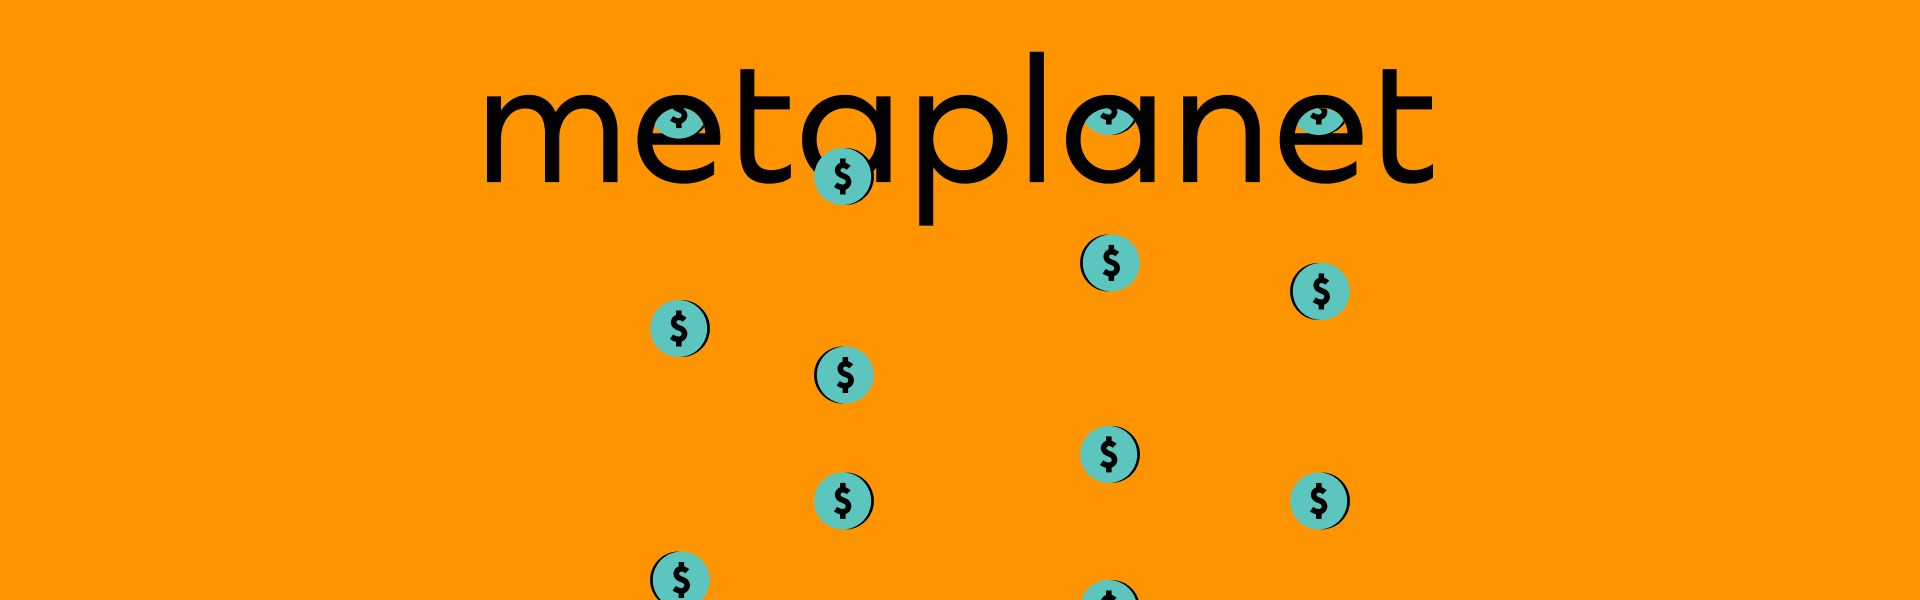 Metaplanet виділить додатково $1,6 млн на купівлю біткоїнів